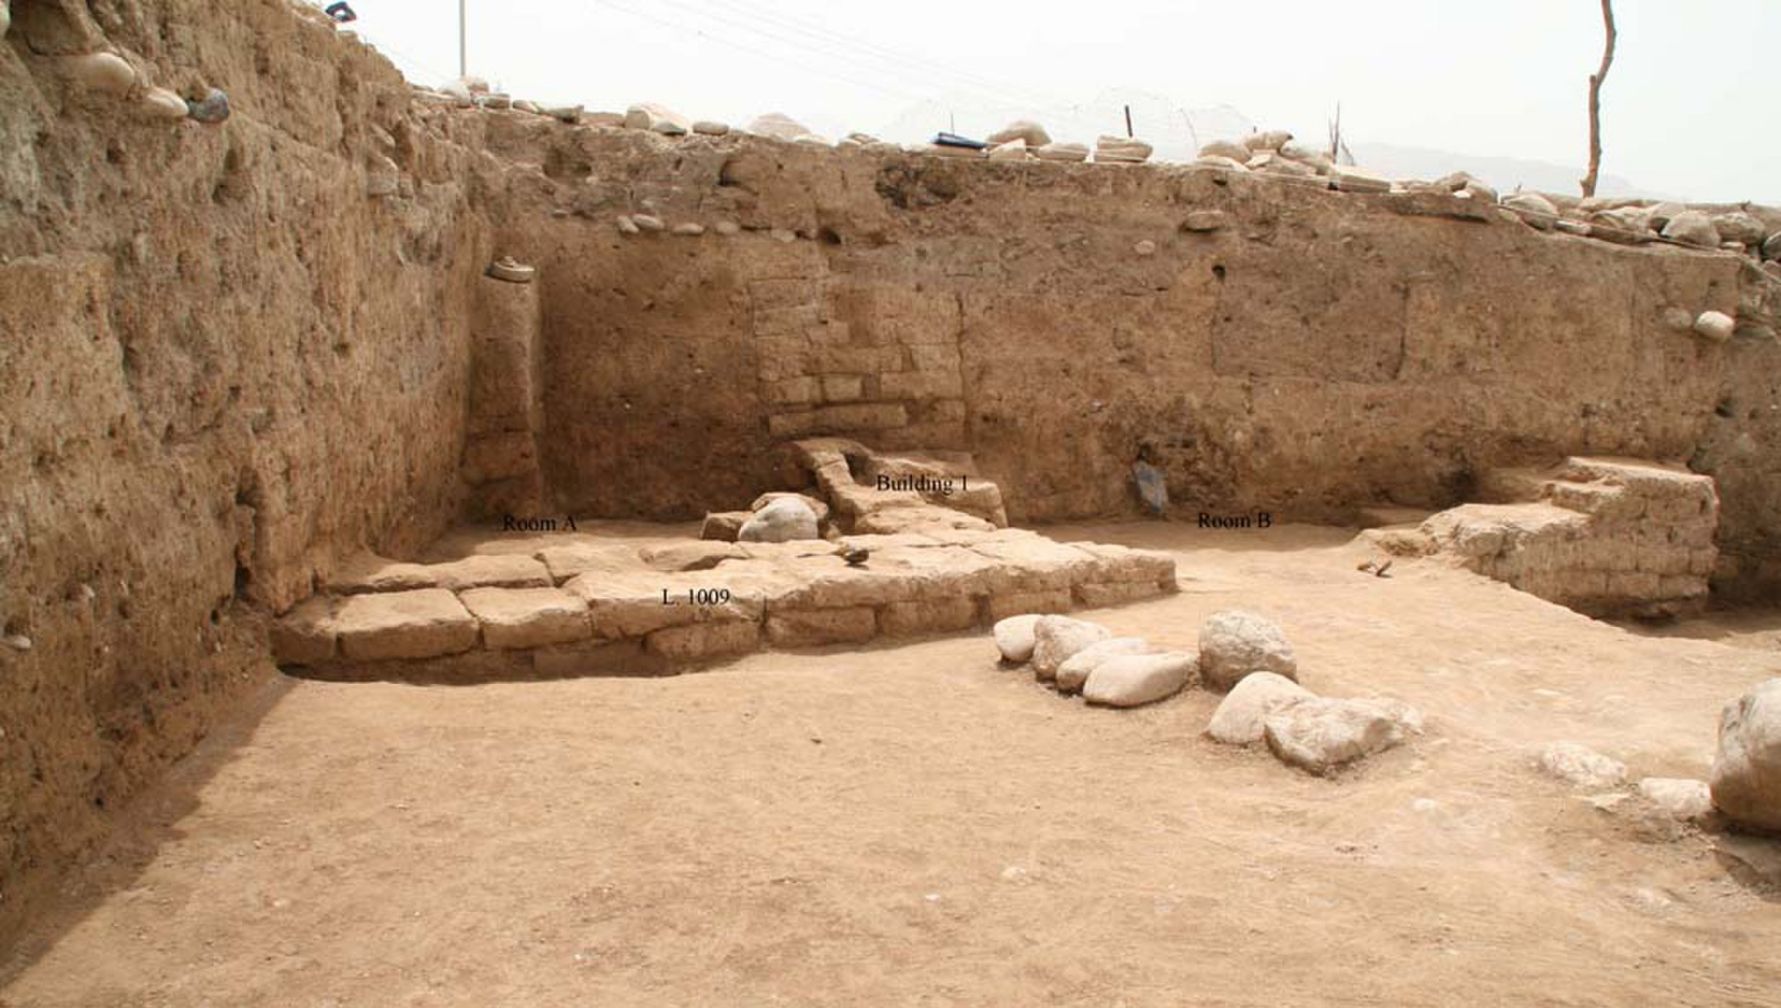 باستان شناسان در منطقه کردستان شمال عراق شهری باستانی به نام «ایدو» کشف کردند. این مکان در دوره نوسنگی اشغال شده بود، زمانی که کشاورزی برای اولین بار در خاورمیانه ظاهر شد و شهر بین 3,300 تا 2,900 سال پیش به بیشترین میزان خود رسید. ساختمان نشان داده شده در اینجا یک سازه خانگی است، با حداقل دو اتاق، که ممکن است مربوط به اواخر عمر شهر باشد، شاید حدود 2,000 سال پیش، زمانی که امپراتوری اشکانی منطقه را تحت کنترل داشت.